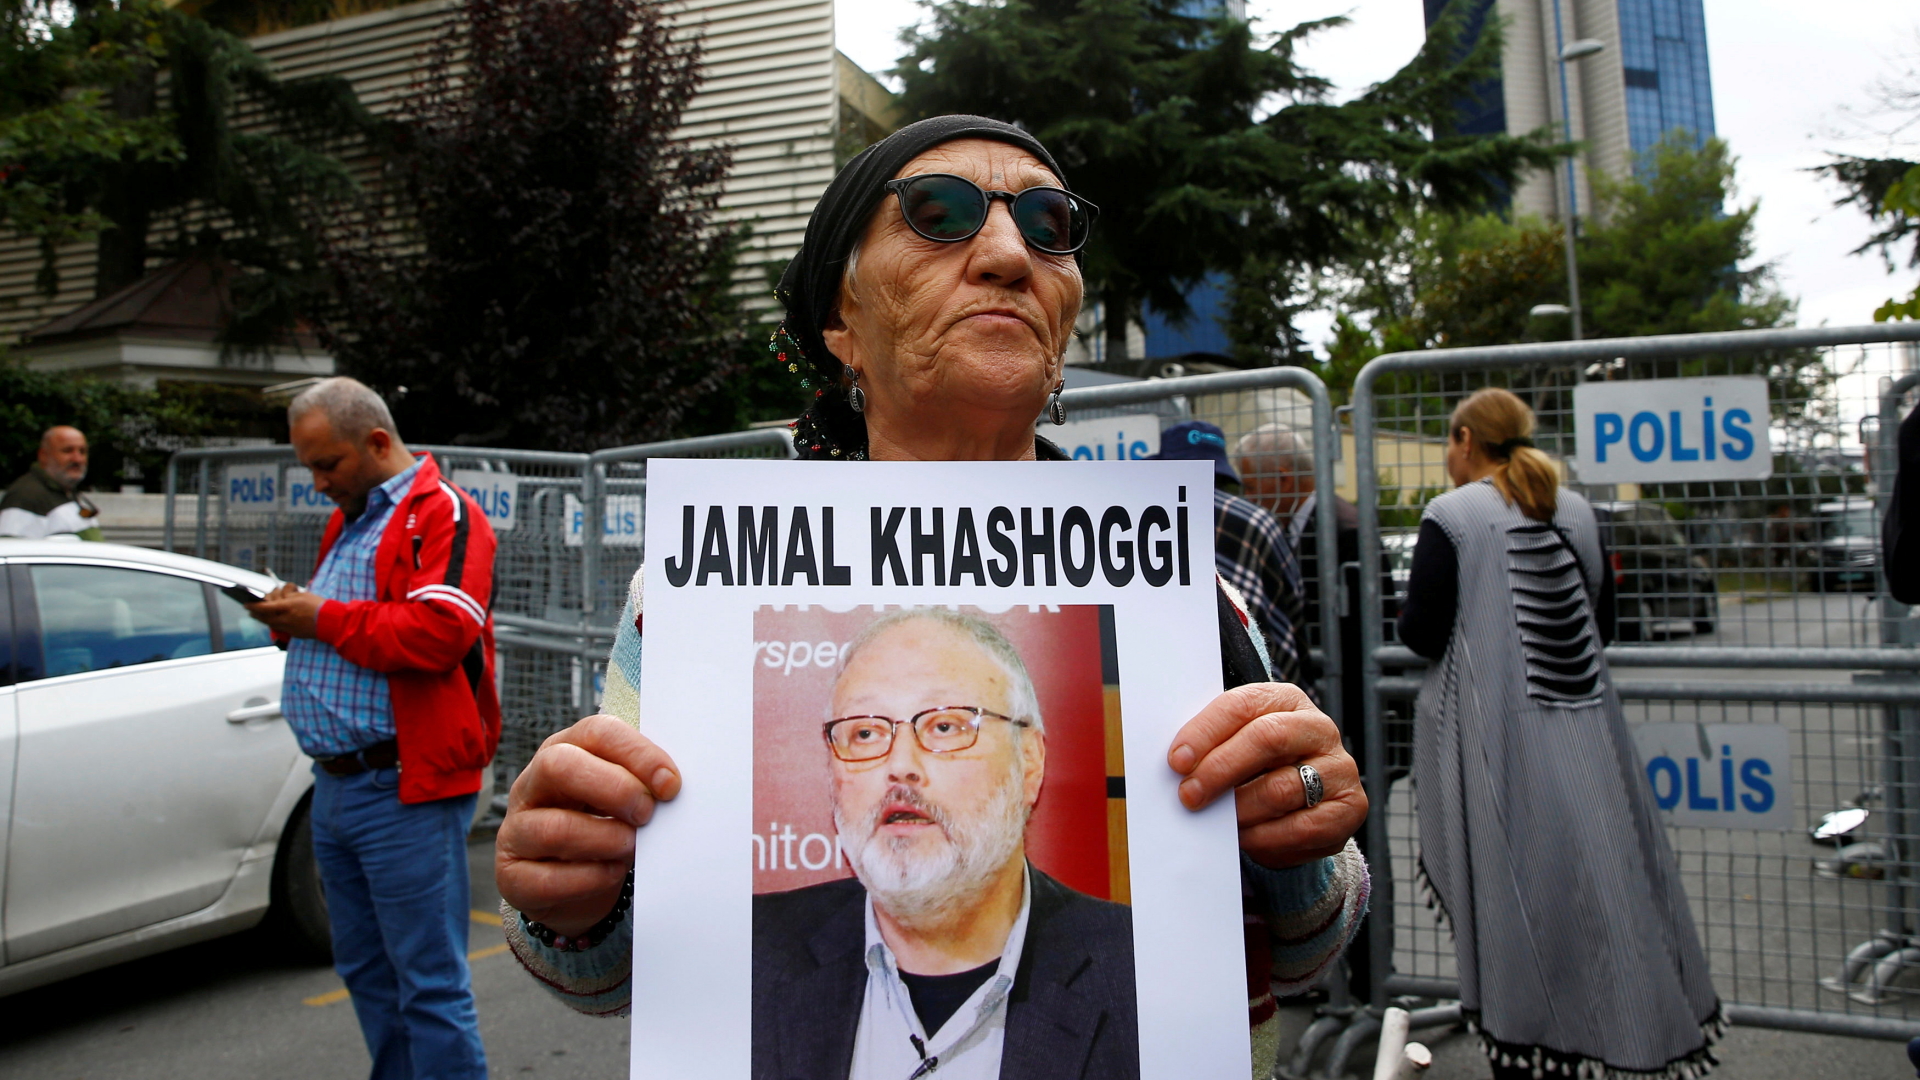 Ein Menschenrechtsaktivist hält ein Bild des Journalisten Jamal Khashoggi. | Bildquelle: REUTERS